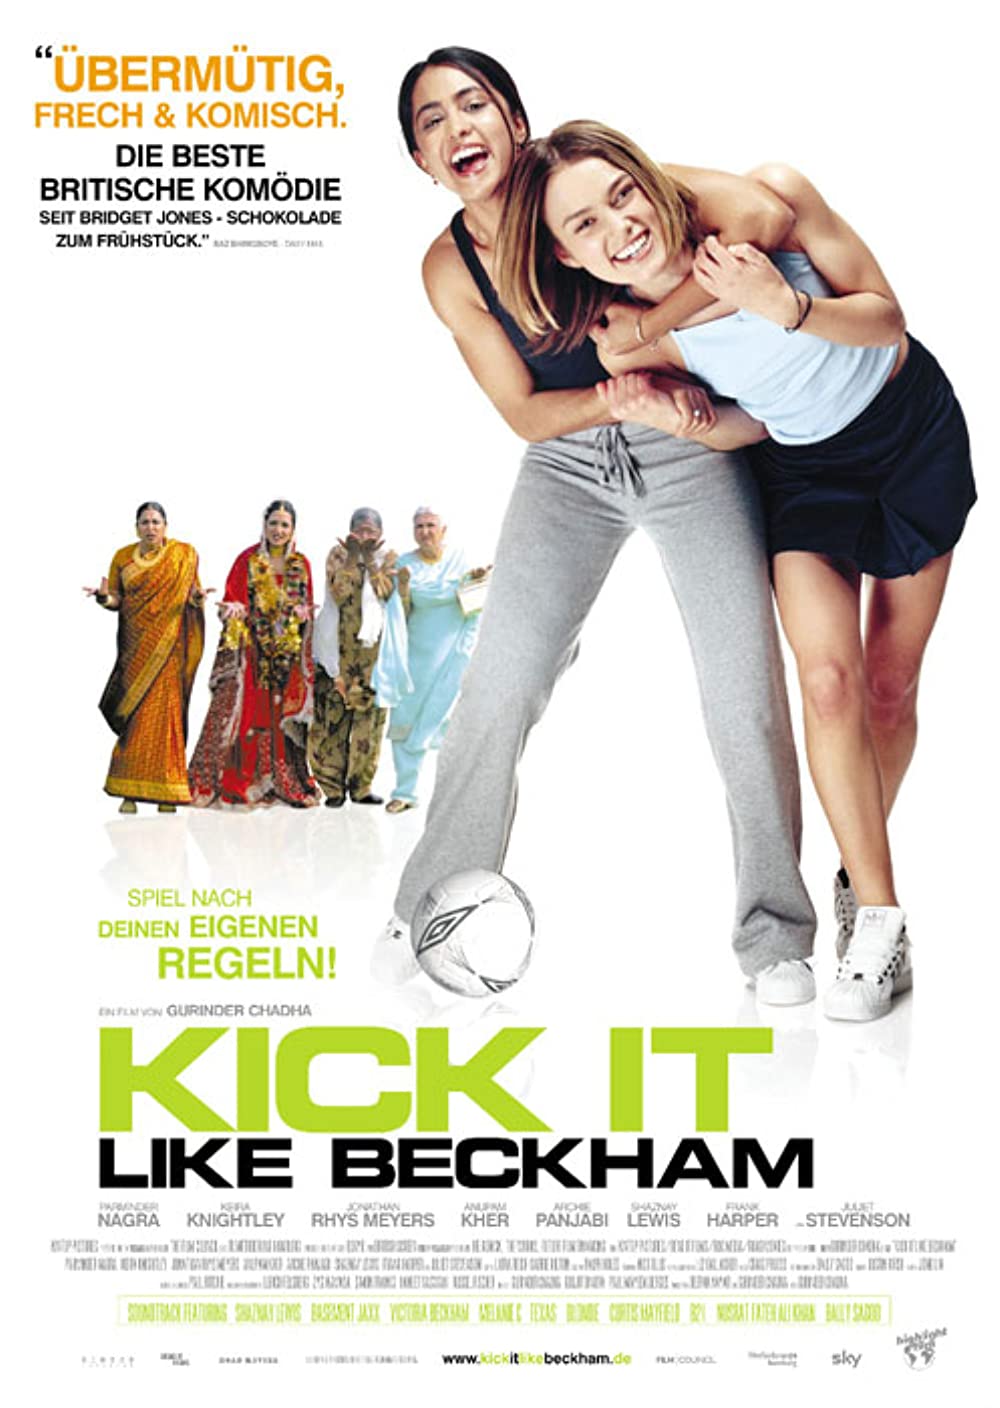 Filmbeschreibung zu Bend It Like Beckham